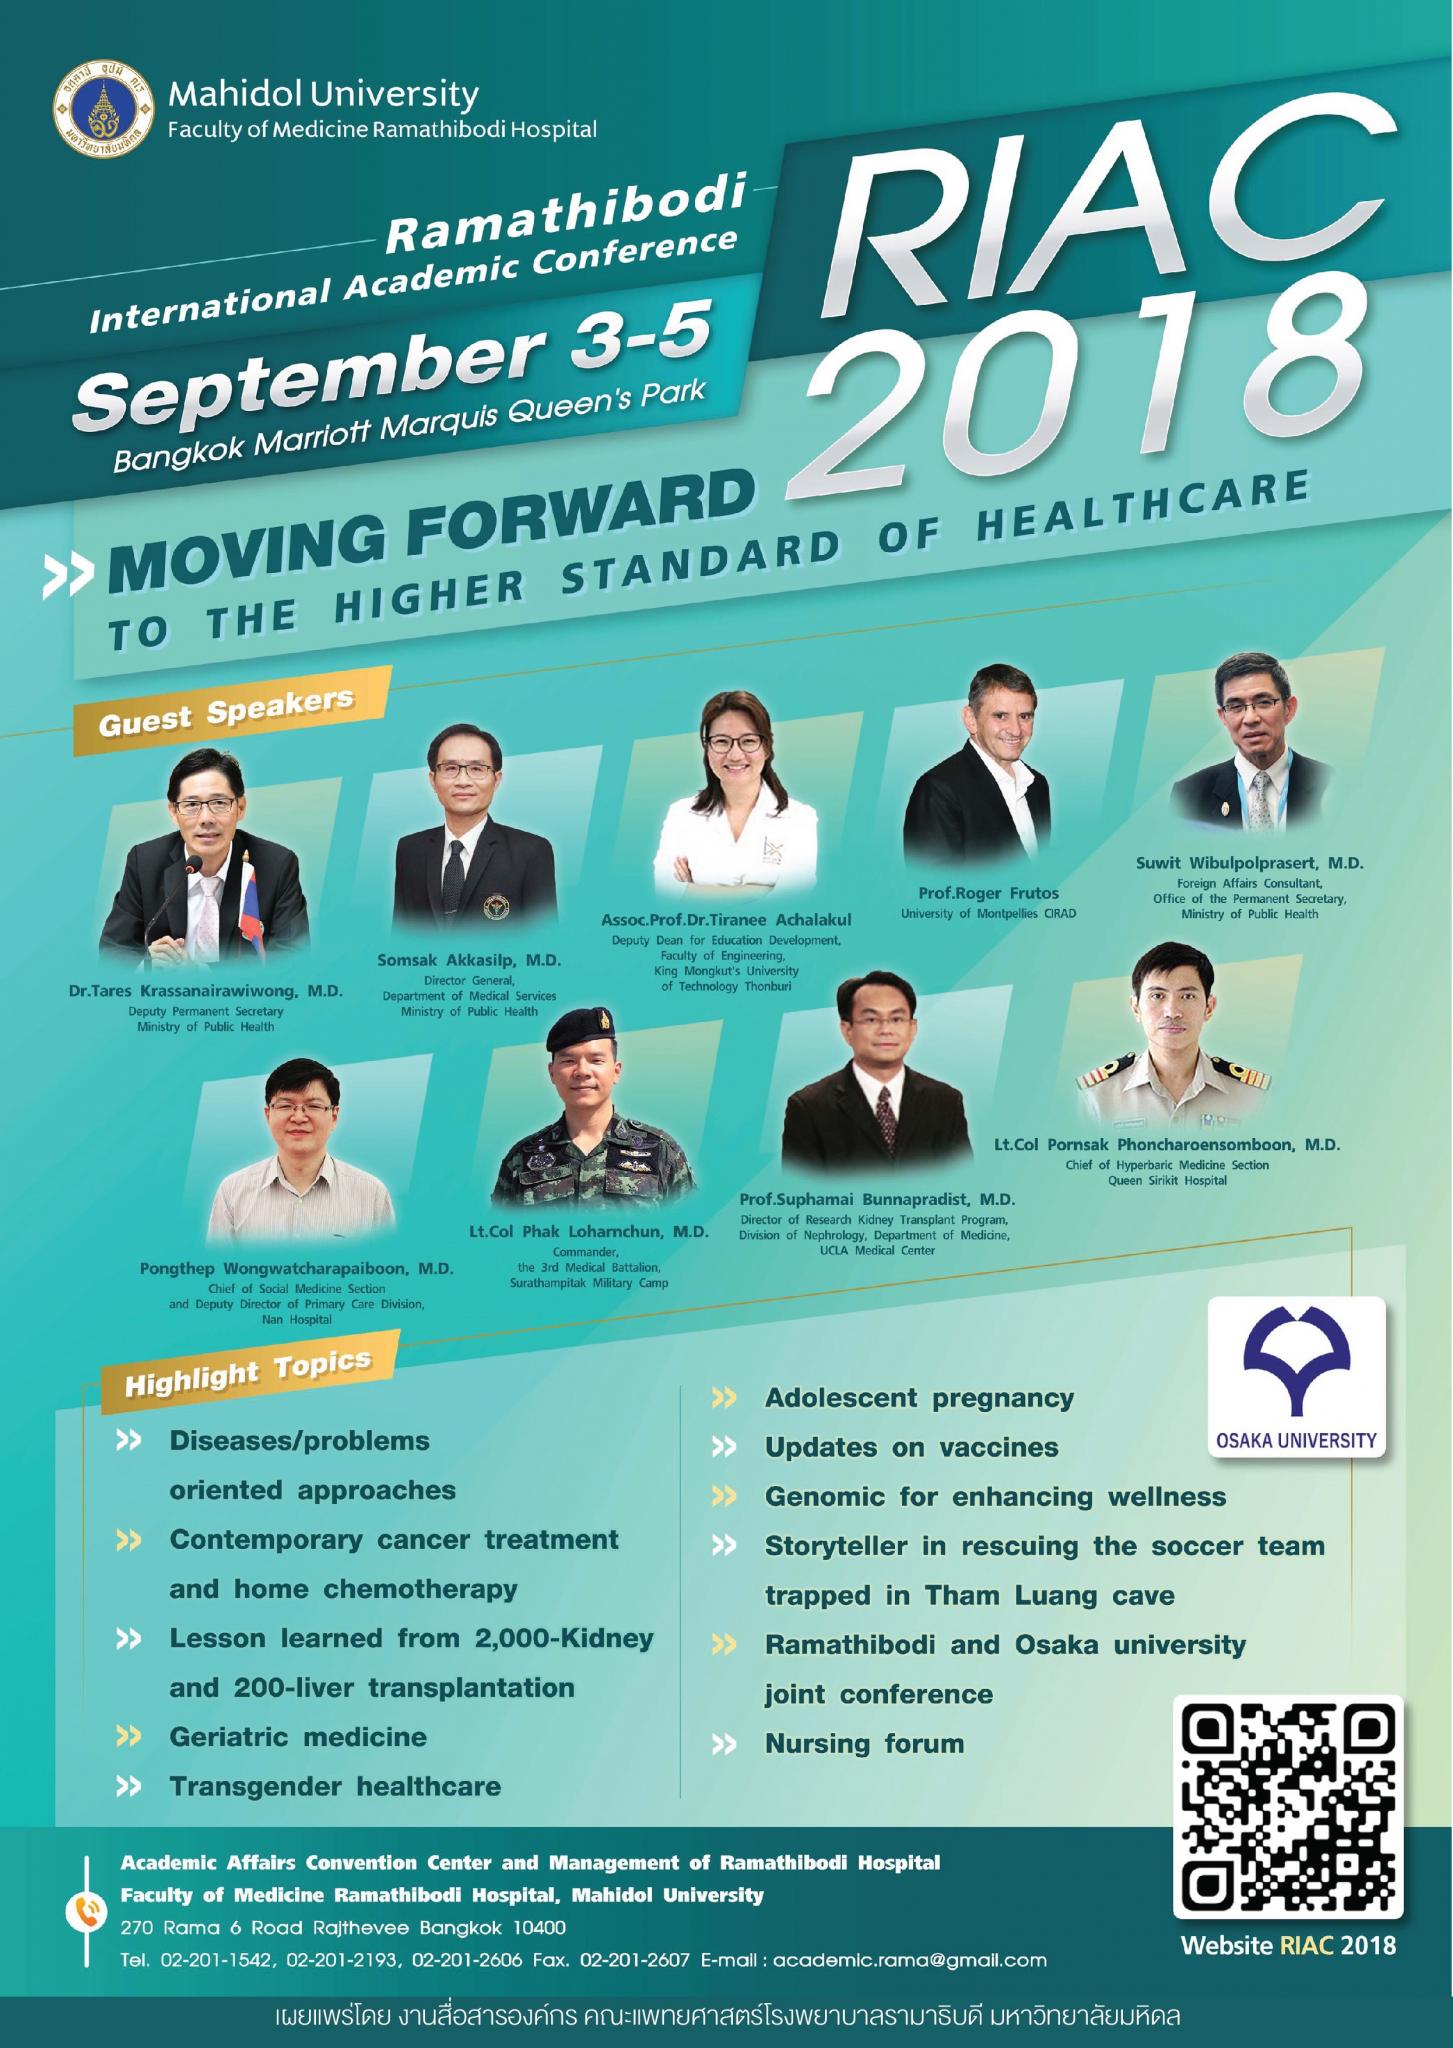 ประชุมวิชาการประจำปี 2561 Ramathibodi international Academic Conference (RIAC) 2018 เรื่อง "Moving forward to the higher standard of care"